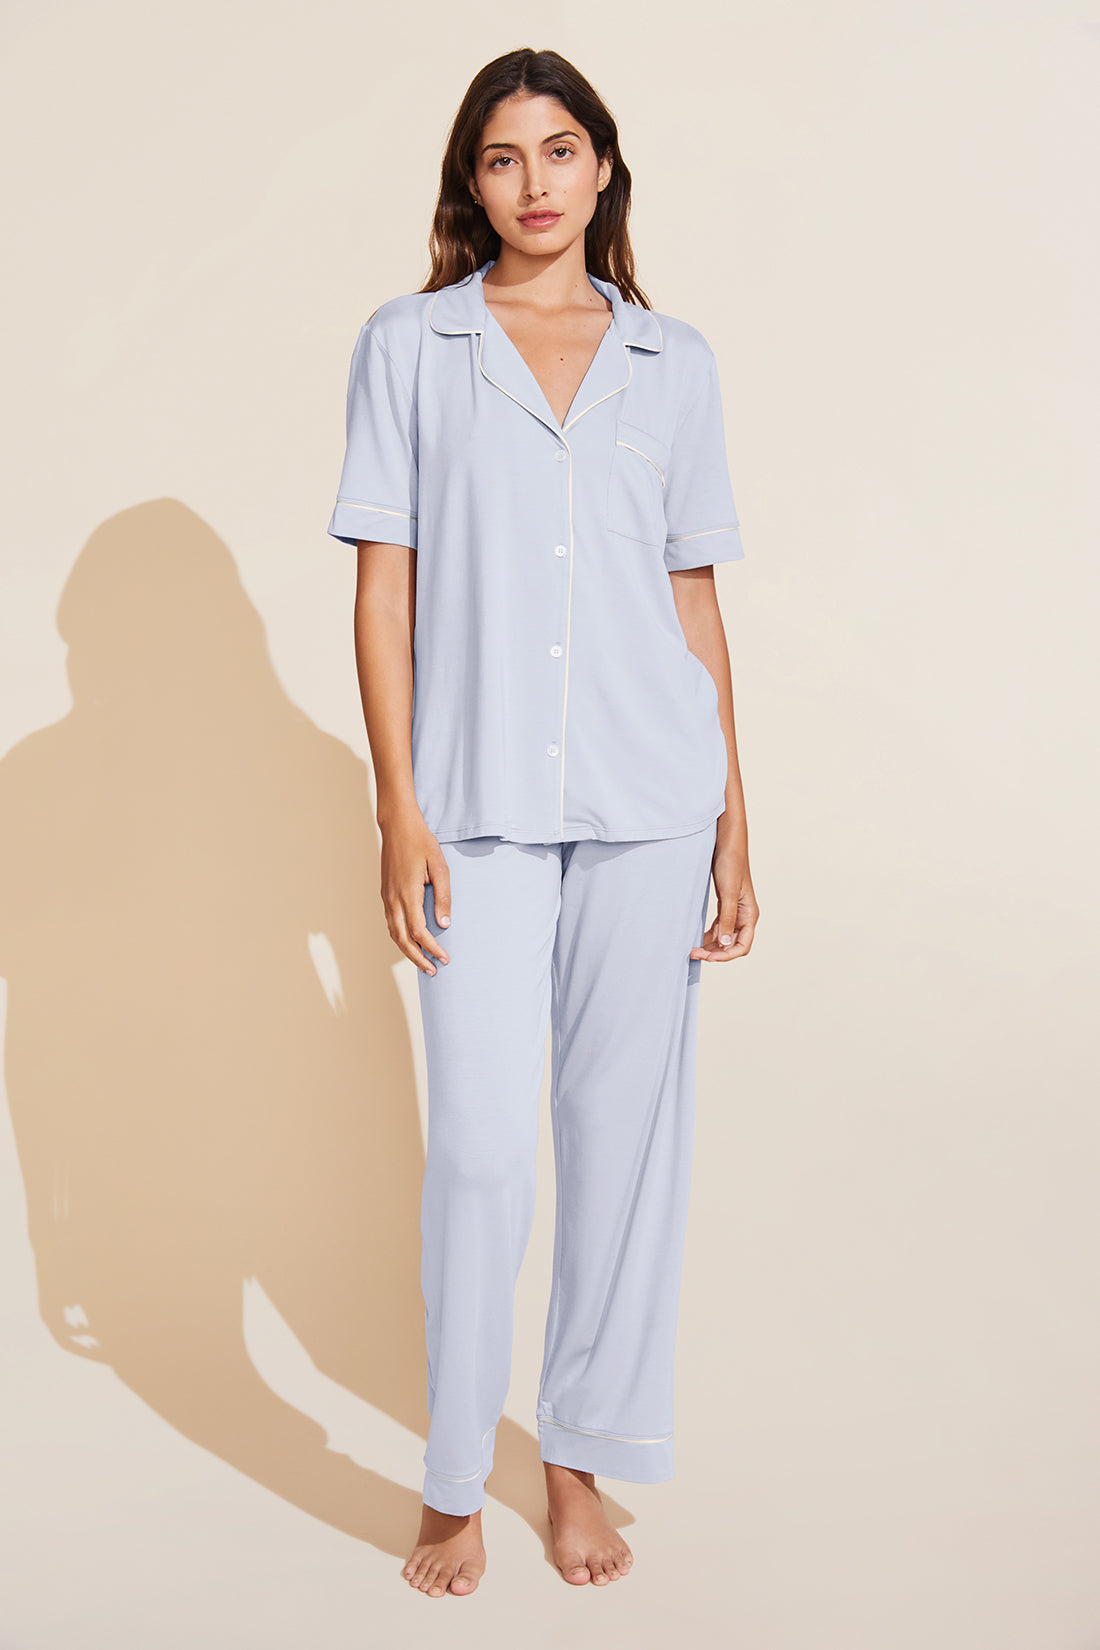 Women Sleepwear Set V Neck Top Pants Modal Pajamas Nightwear, Blue, XXL